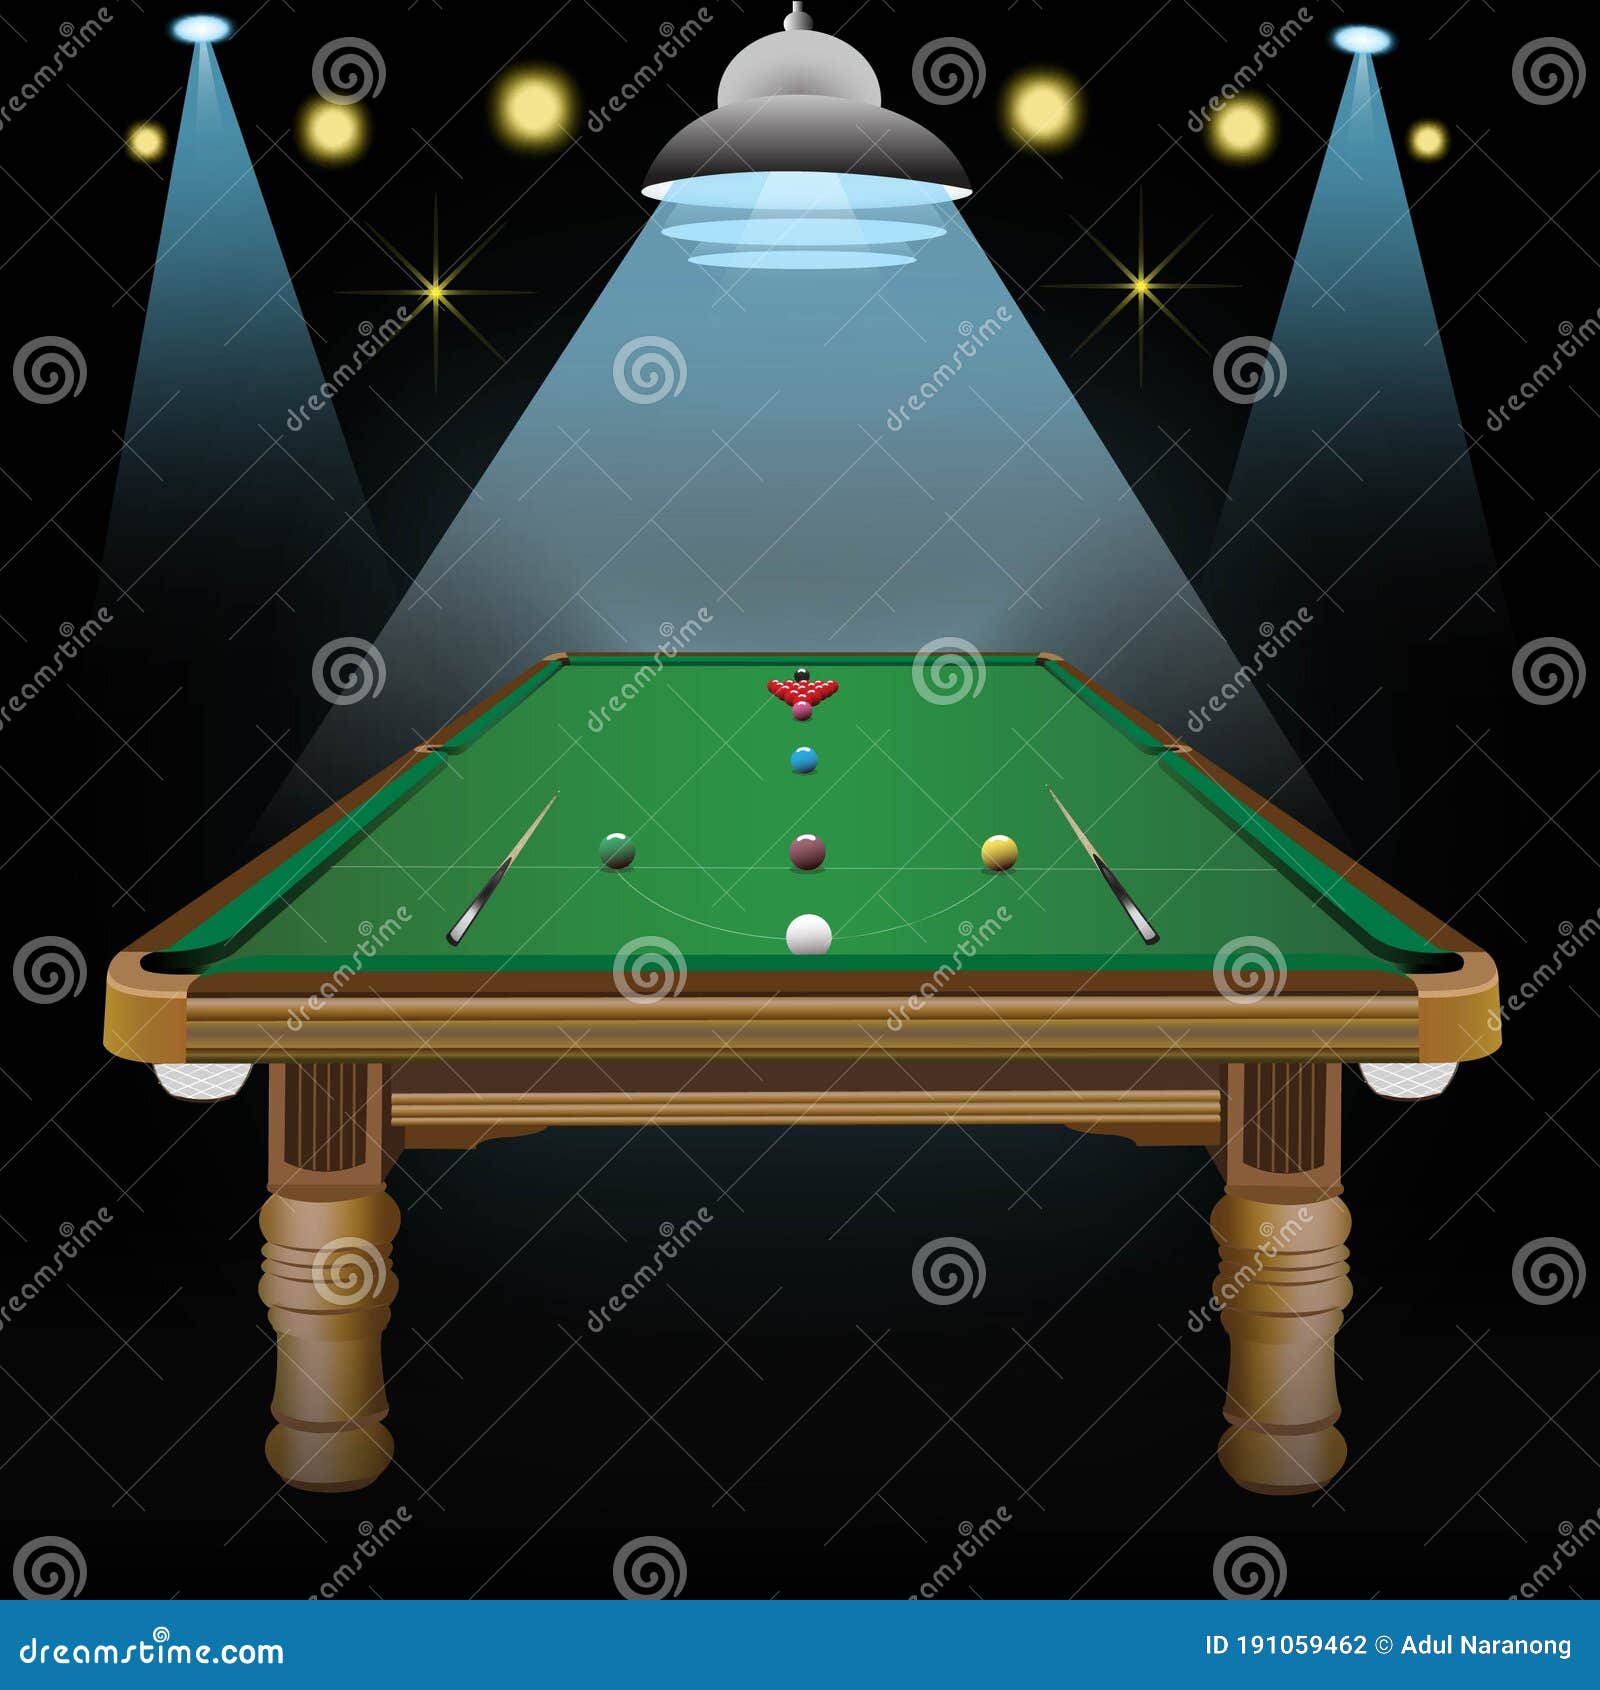 Trilha De Snooker Court Billiards Ilustração Stock - Ilustração de azul,  sinuca: 191059462